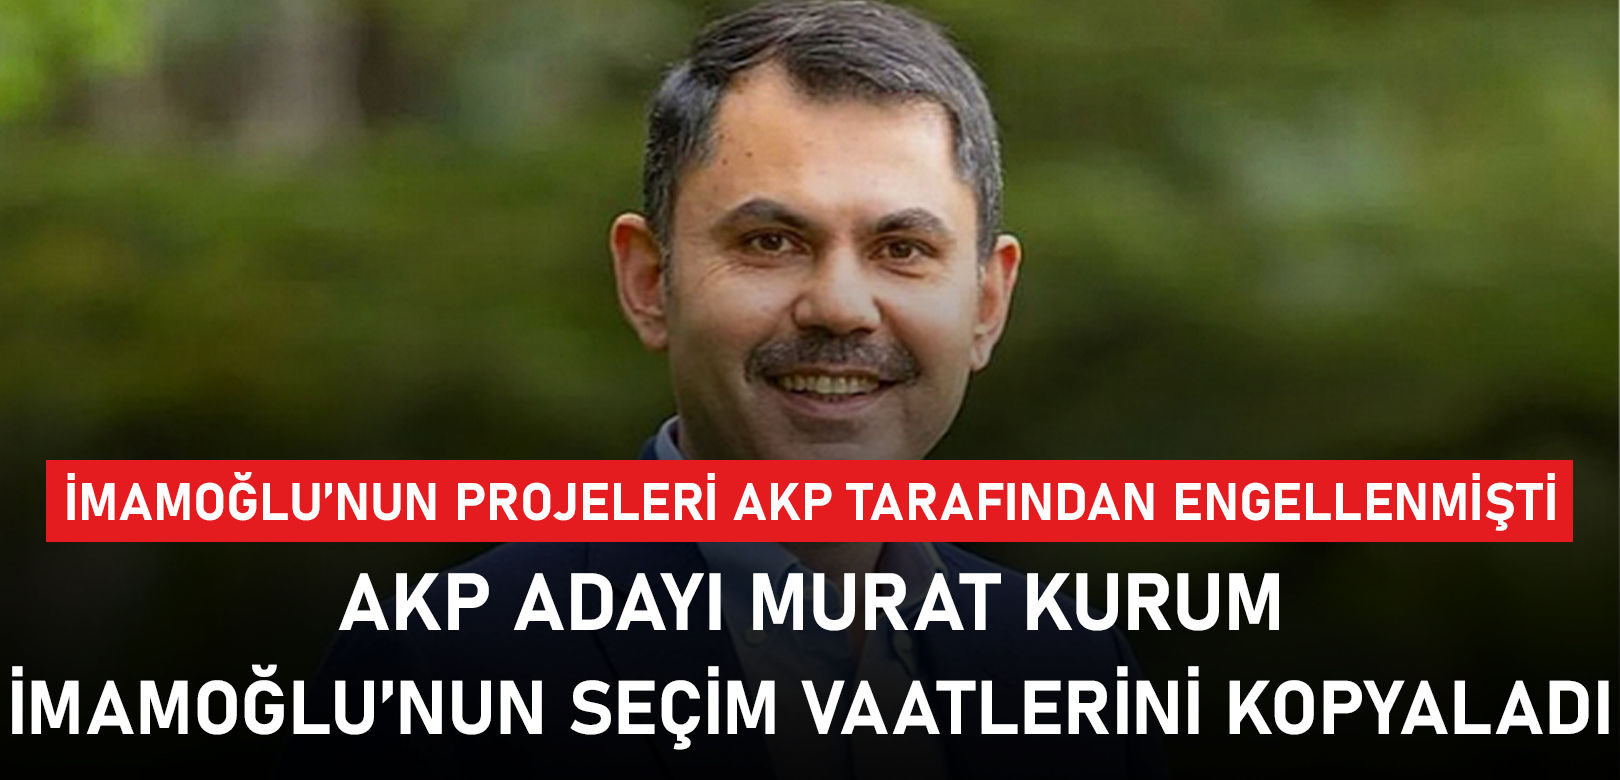 Murat Kurum, Ekrem İmamoğlu'nun vaatlerini kopyaladı